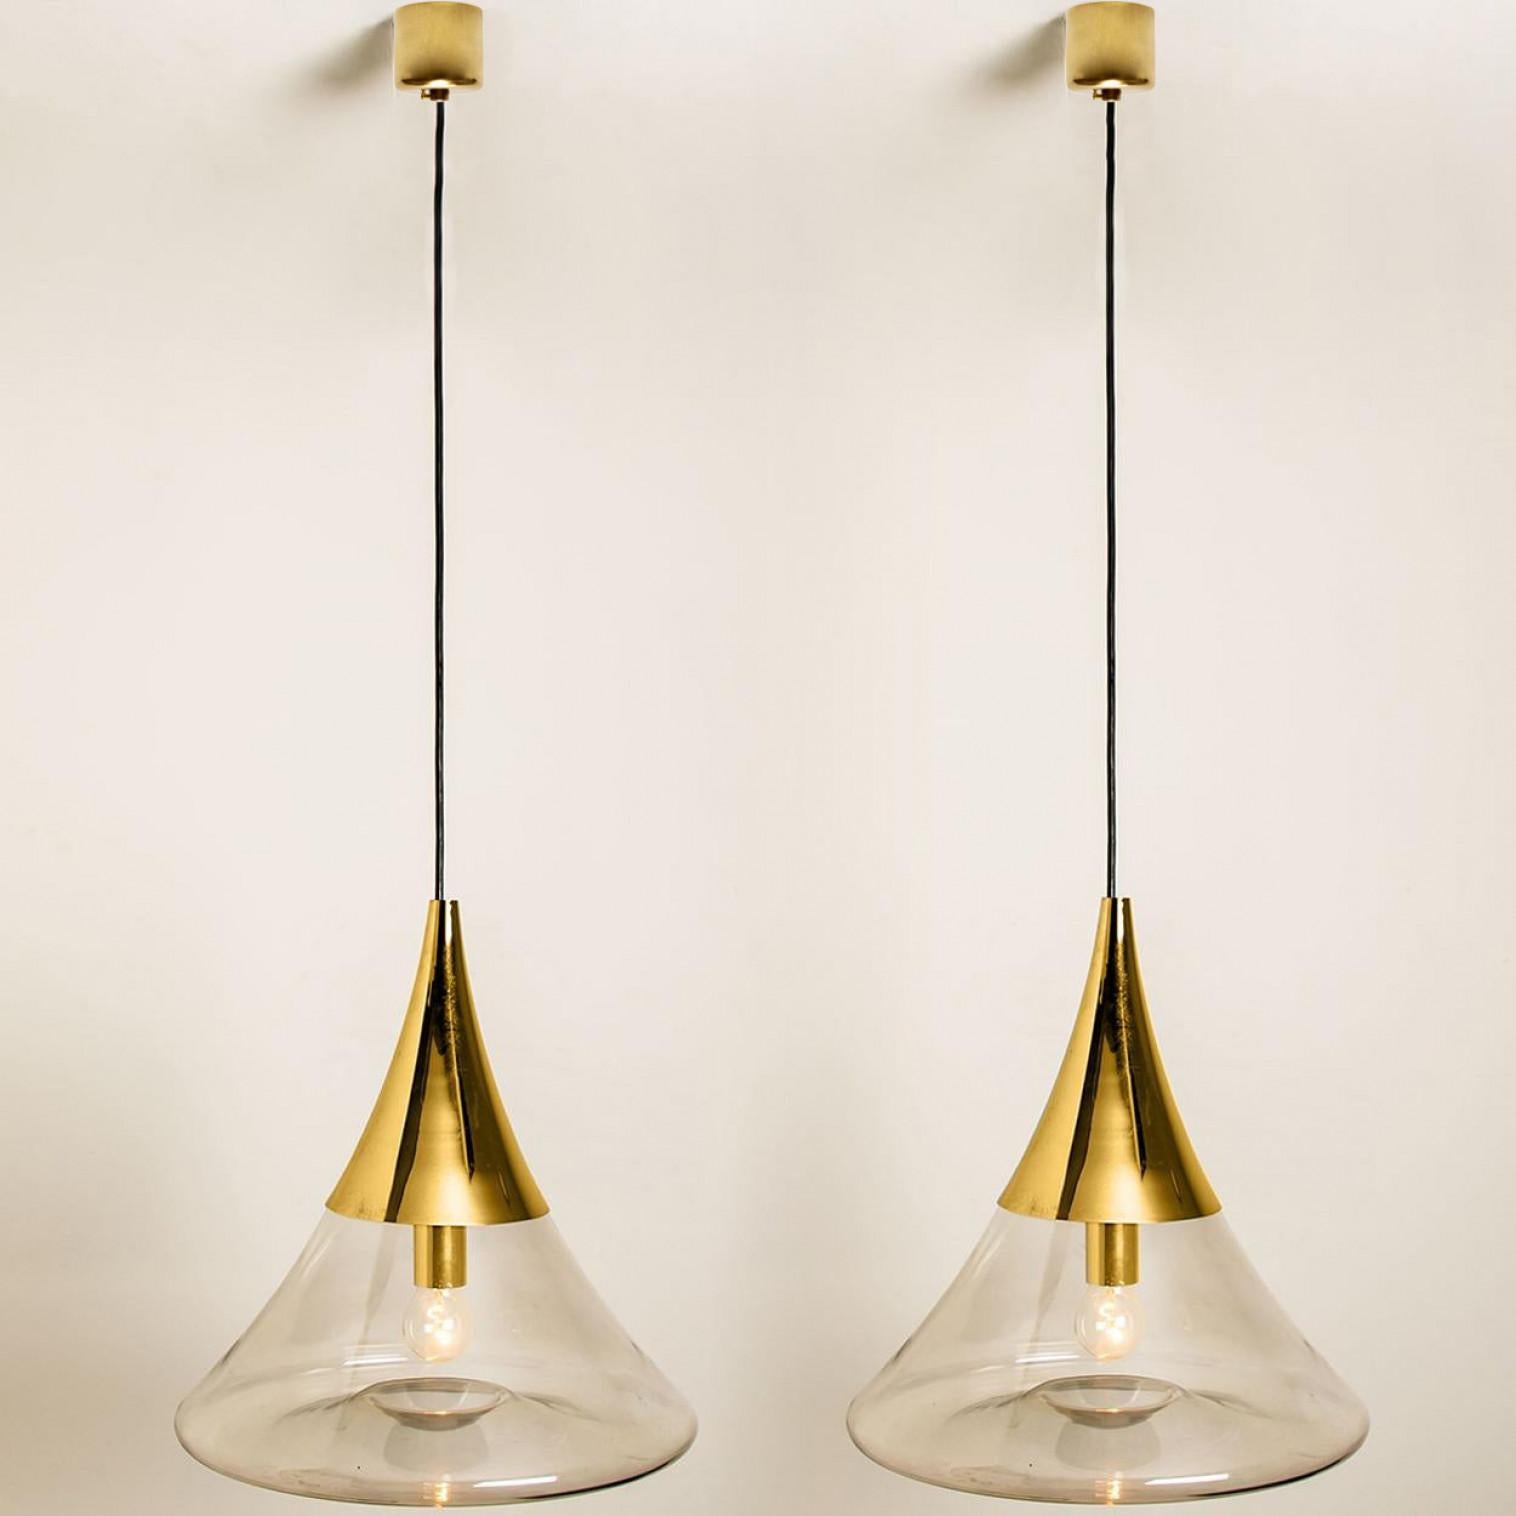 Zwei kegelförmige, minimalistische Leuchten von Limburg Glashütte, 1970. Klare Linien und zeitloses Design.

Tolle Qualität und in perfektem Zustand. Gereinigt, neu verkabelt und einsatzbereit.
Wir können kostenlos jede beliebige Kabellänge liefern.